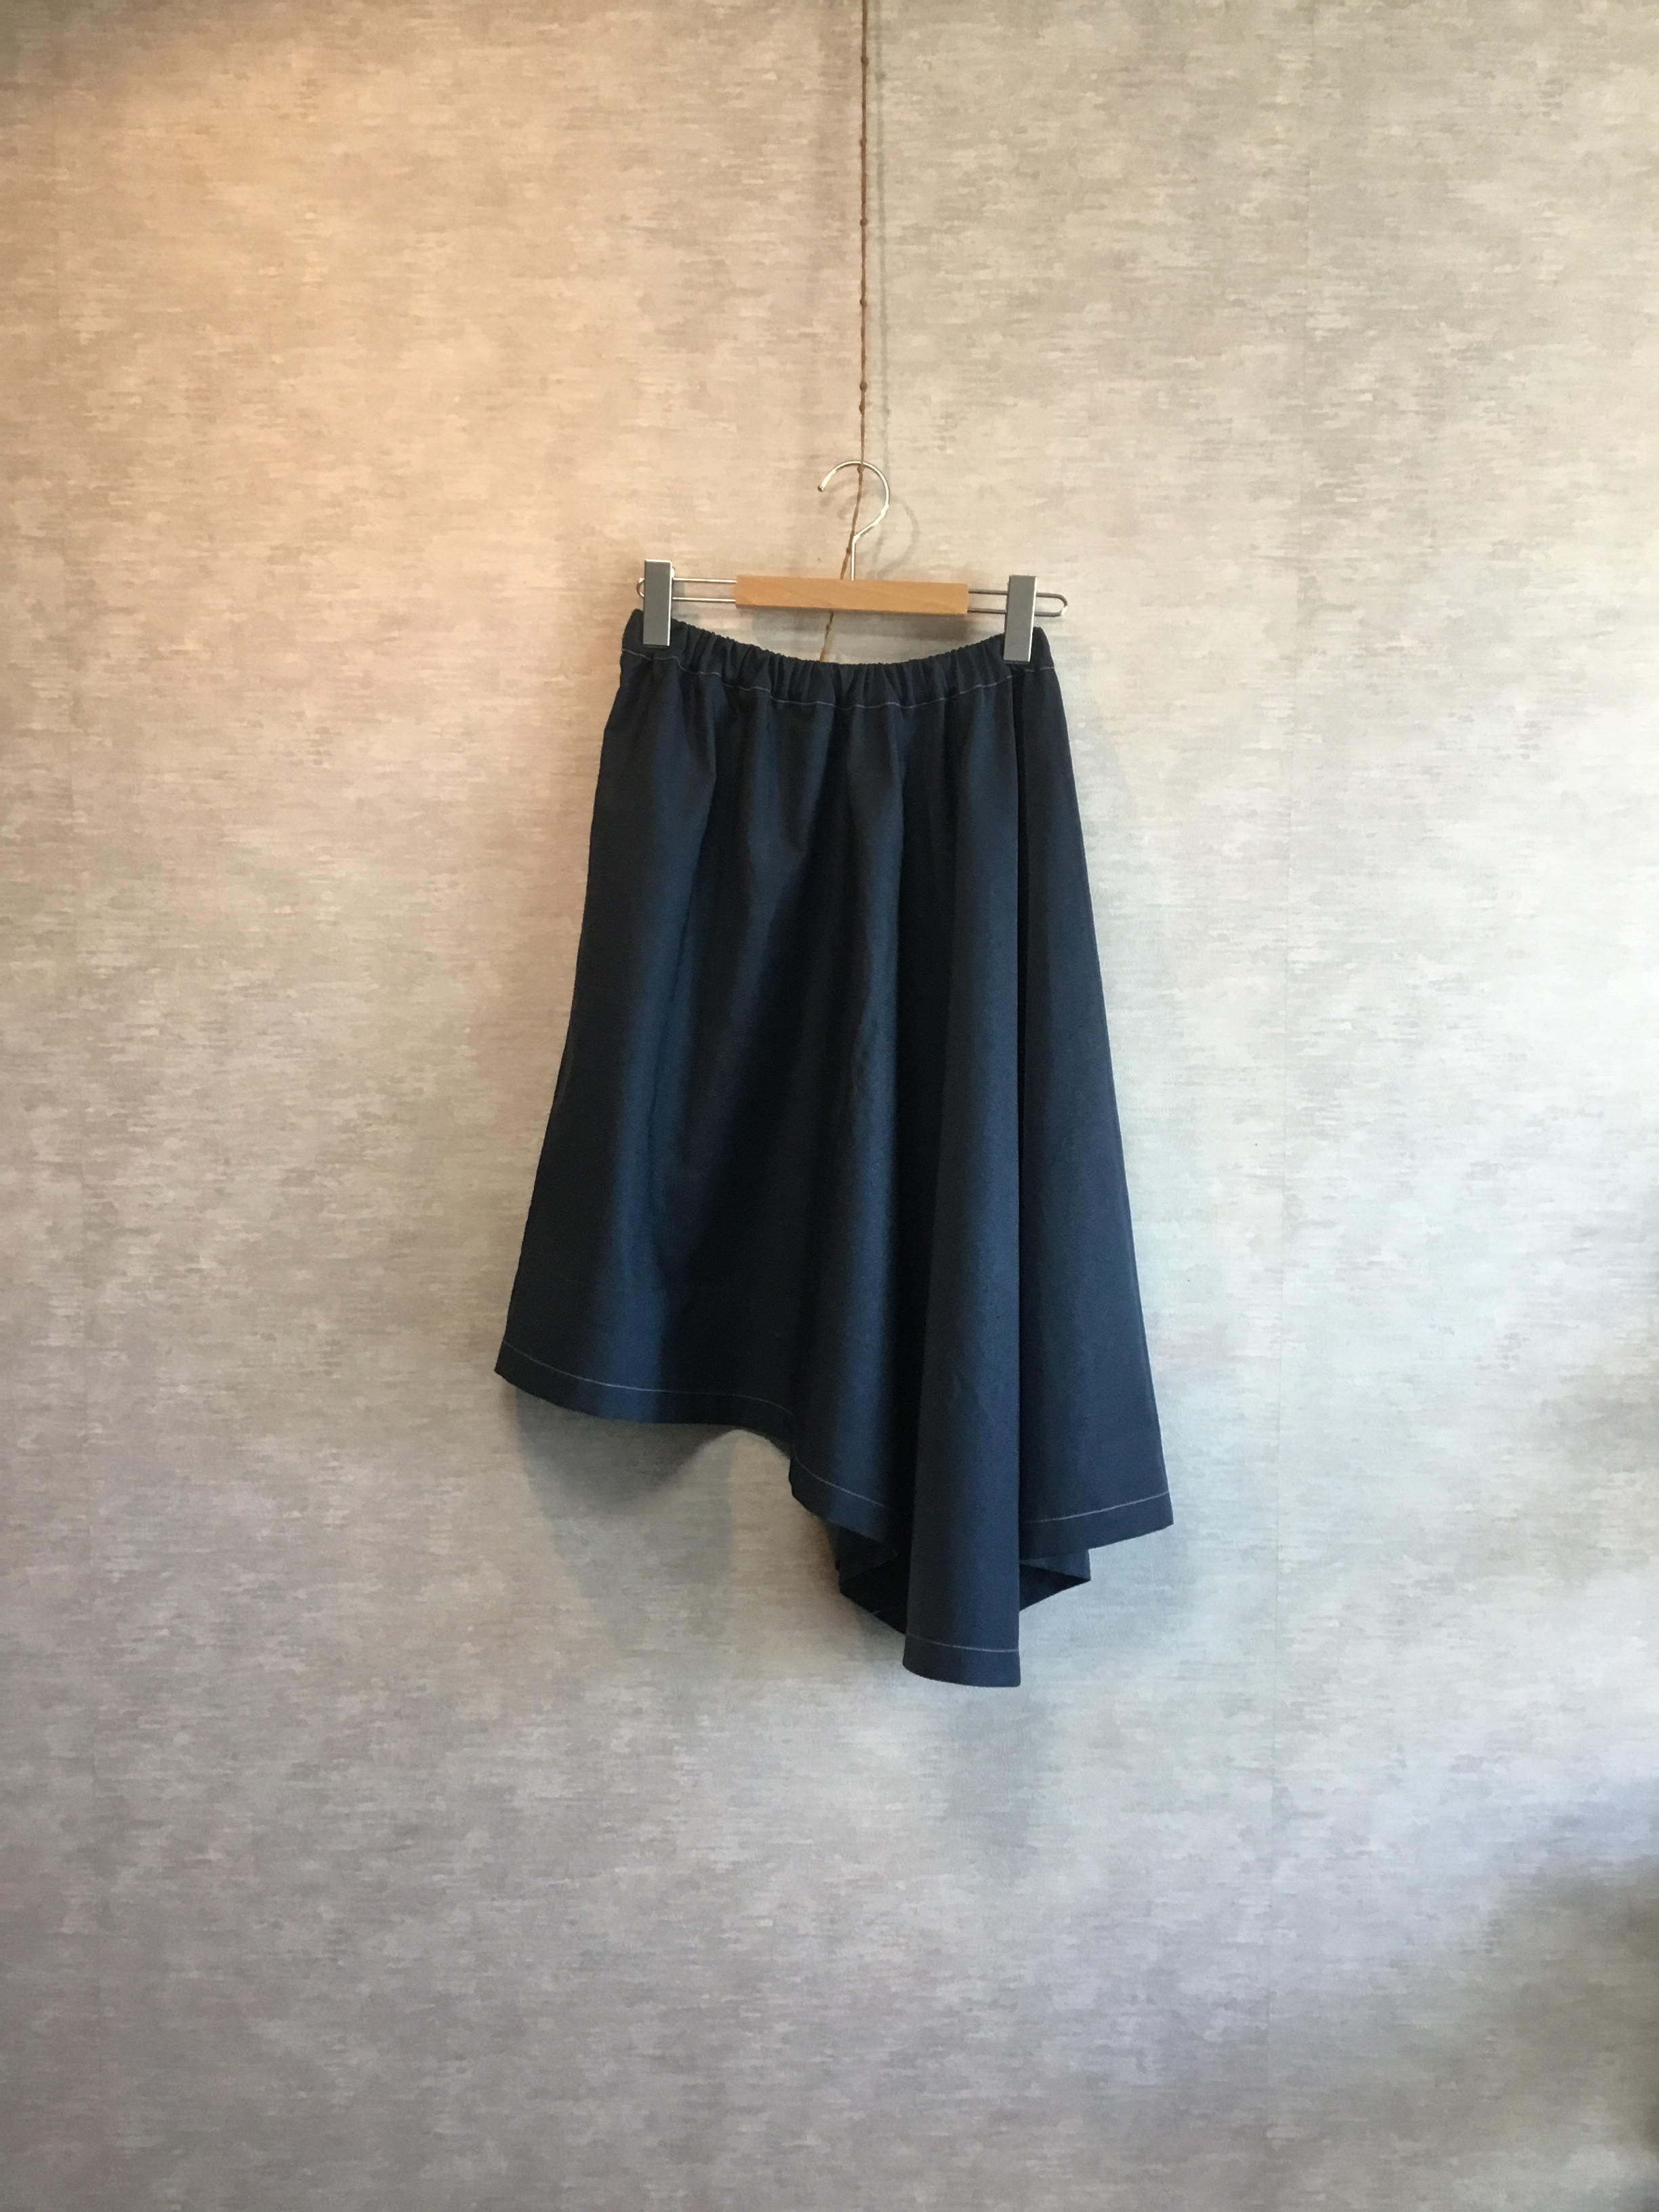 サイズ:3(Lサイズ)☆変形ドレープスカート